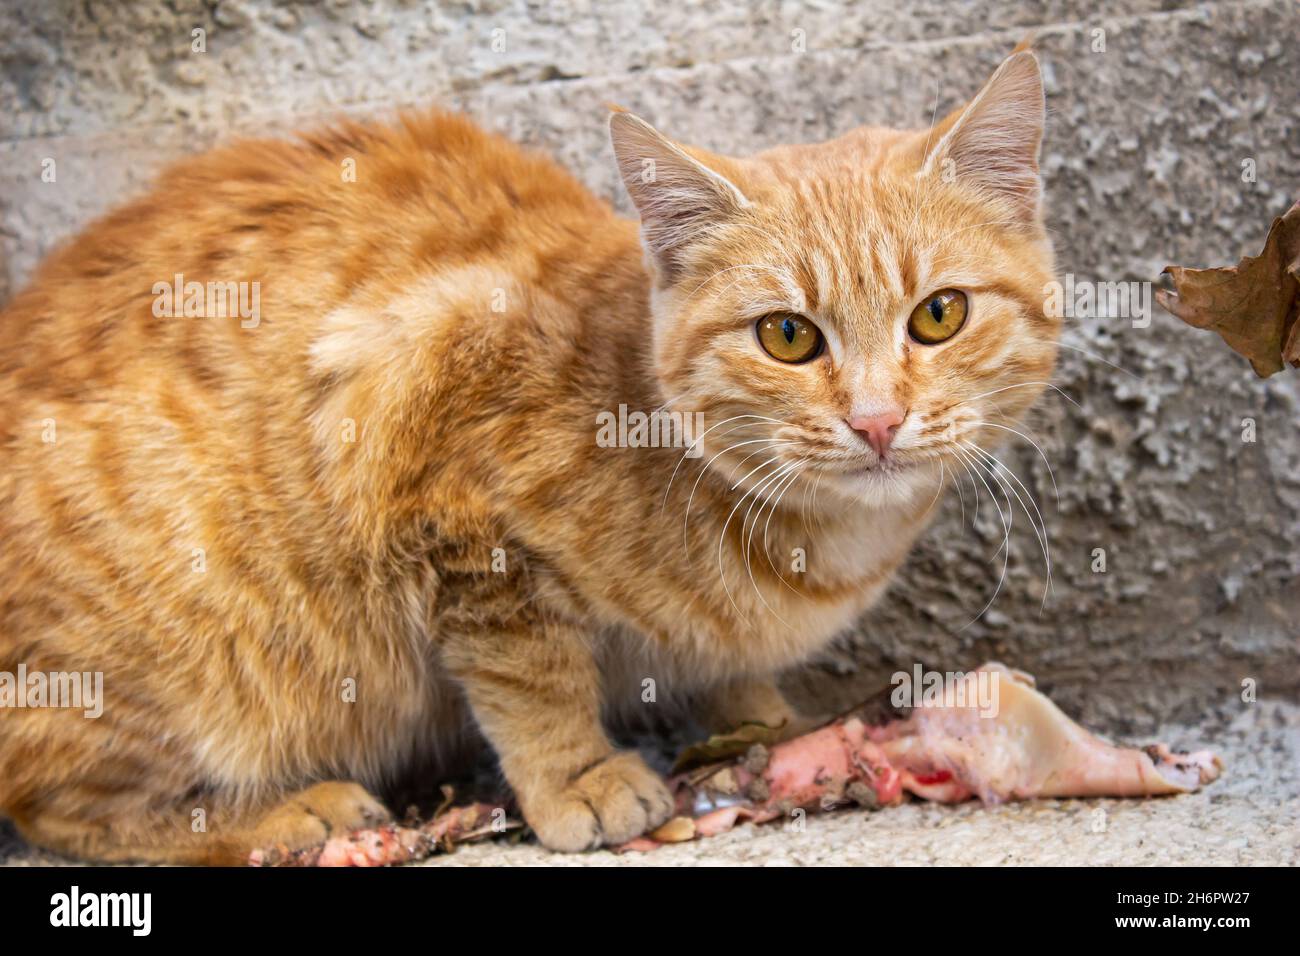 Arancione gatto randagio mangiare carne cruda, primo piano foto di adorabile gatto randagio. Animale parassita affamato che cerca di sopravvivere. Foto Stock